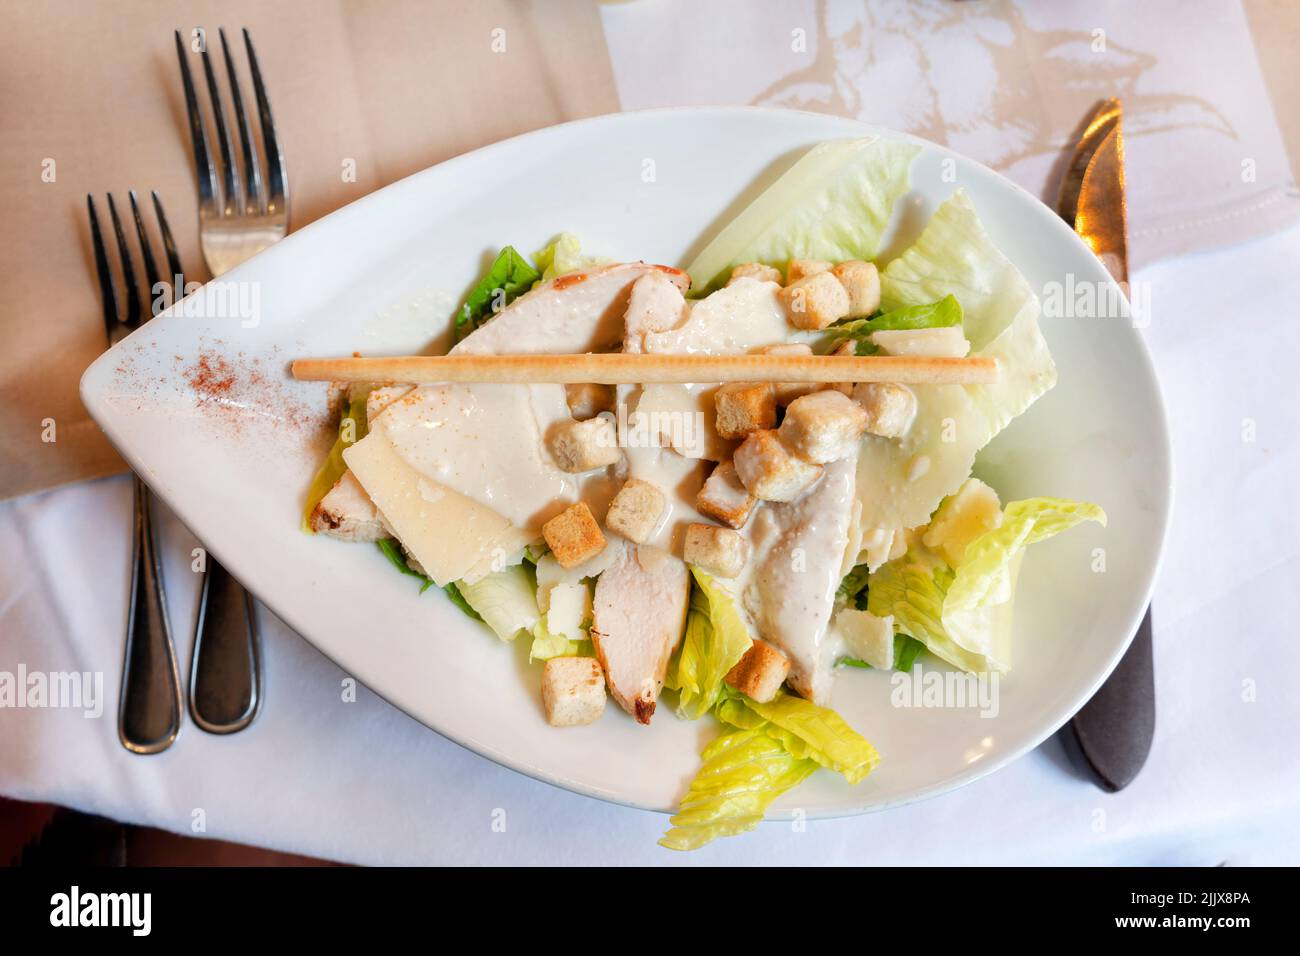 Una ensalada César clásica, bellamente presentada, servida en una mesa del restaurante. La ensalada se remata con una salsa cremosa y picatostes Foto de stock